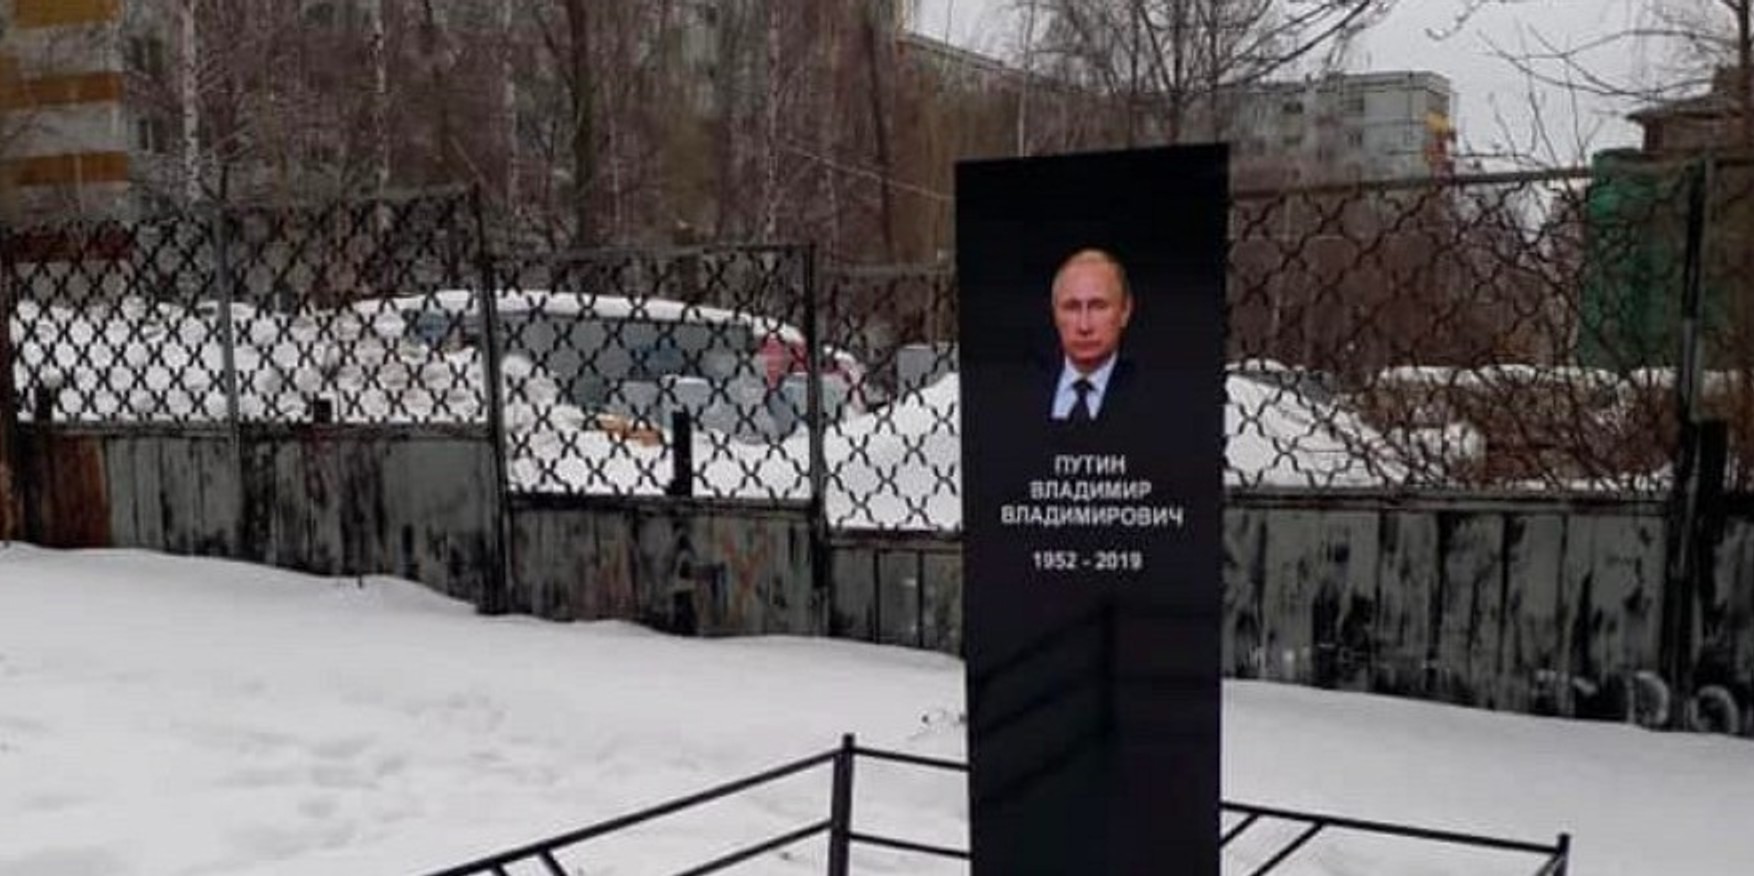 Надгробие Путина в Набережных Челнах